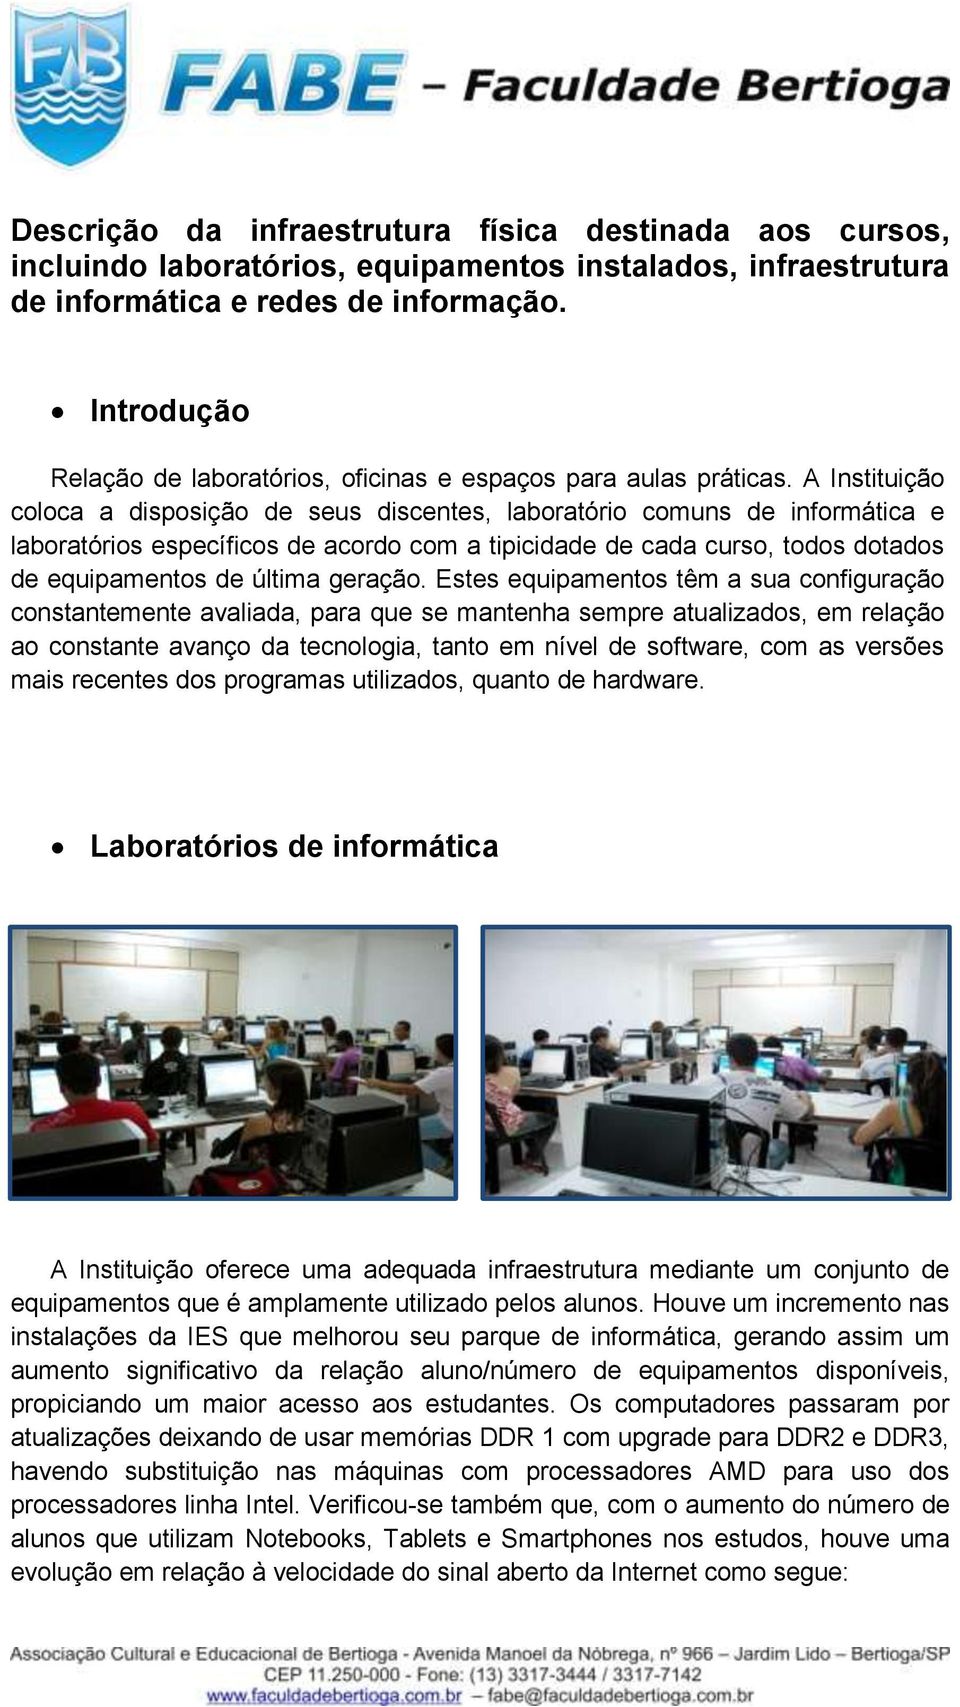 A Instituição coloca a disposição de seus discentes, laboratório comuns de informática e laboratórios específicos de acordo com a tipicidade de cada curso, todos dotados de equipamentos de última